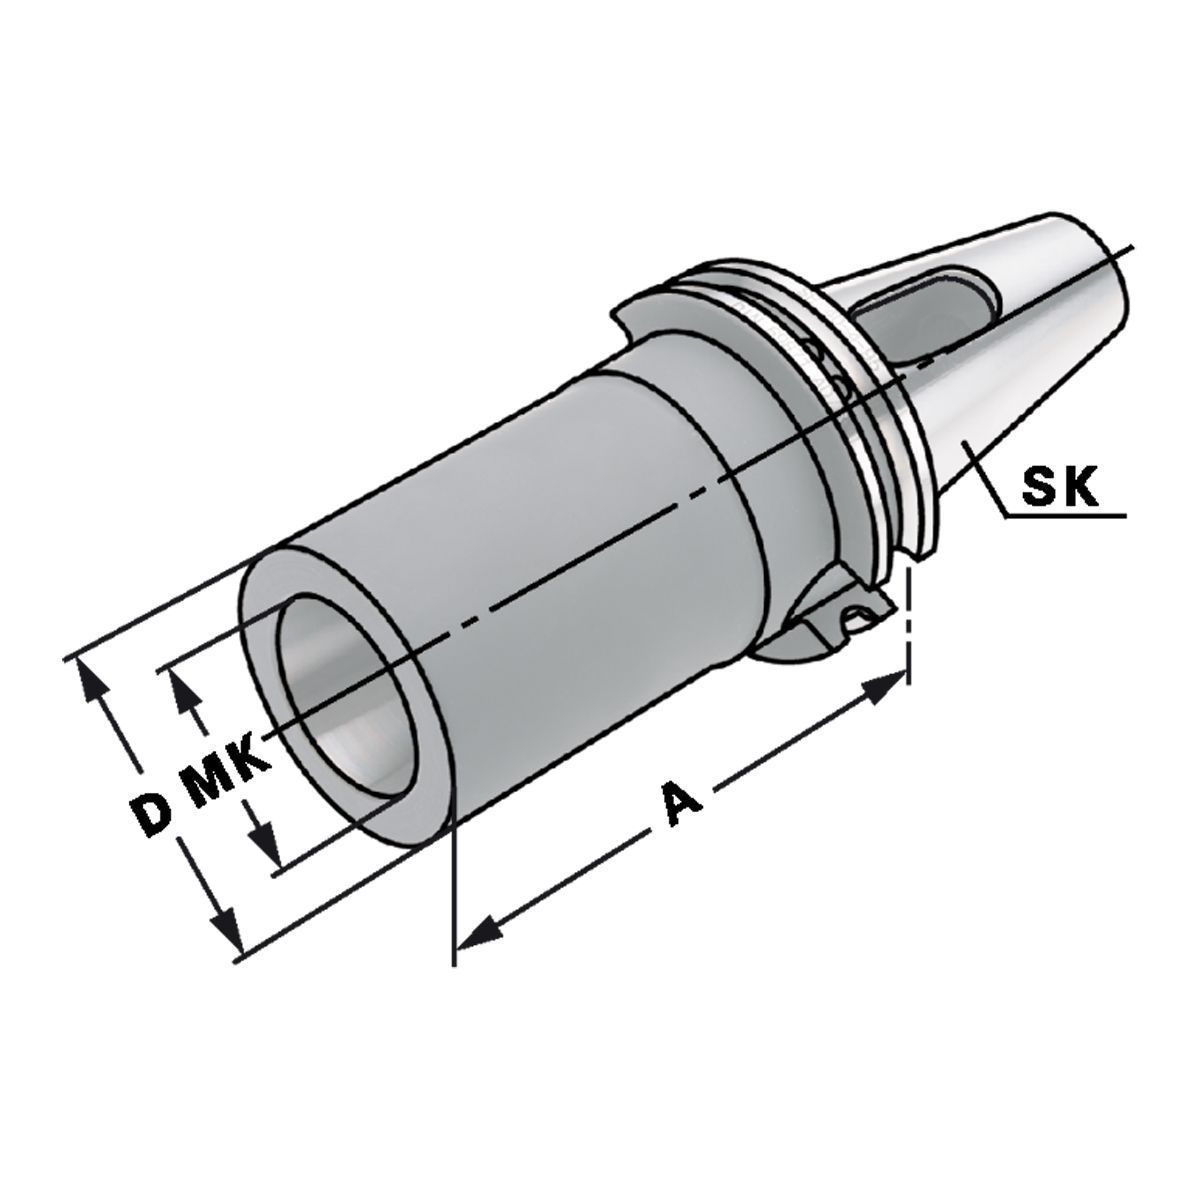 Zwischenhülse SK 50-3-137 für MK mit Austreibelappen DIN 6383